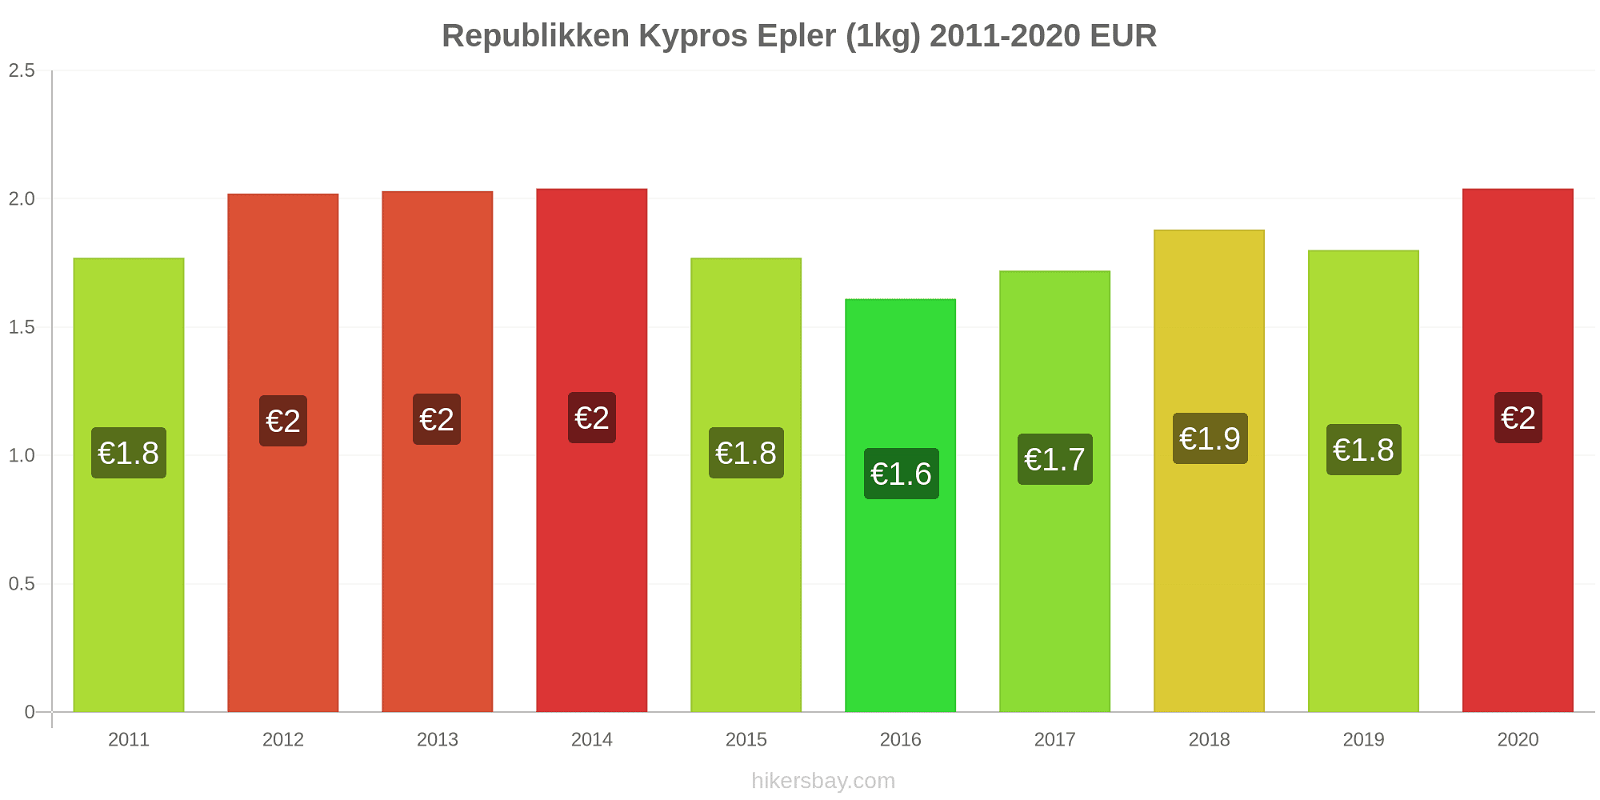 Republikken Kypros prisendringer Epler (1kg) hikersbay.com